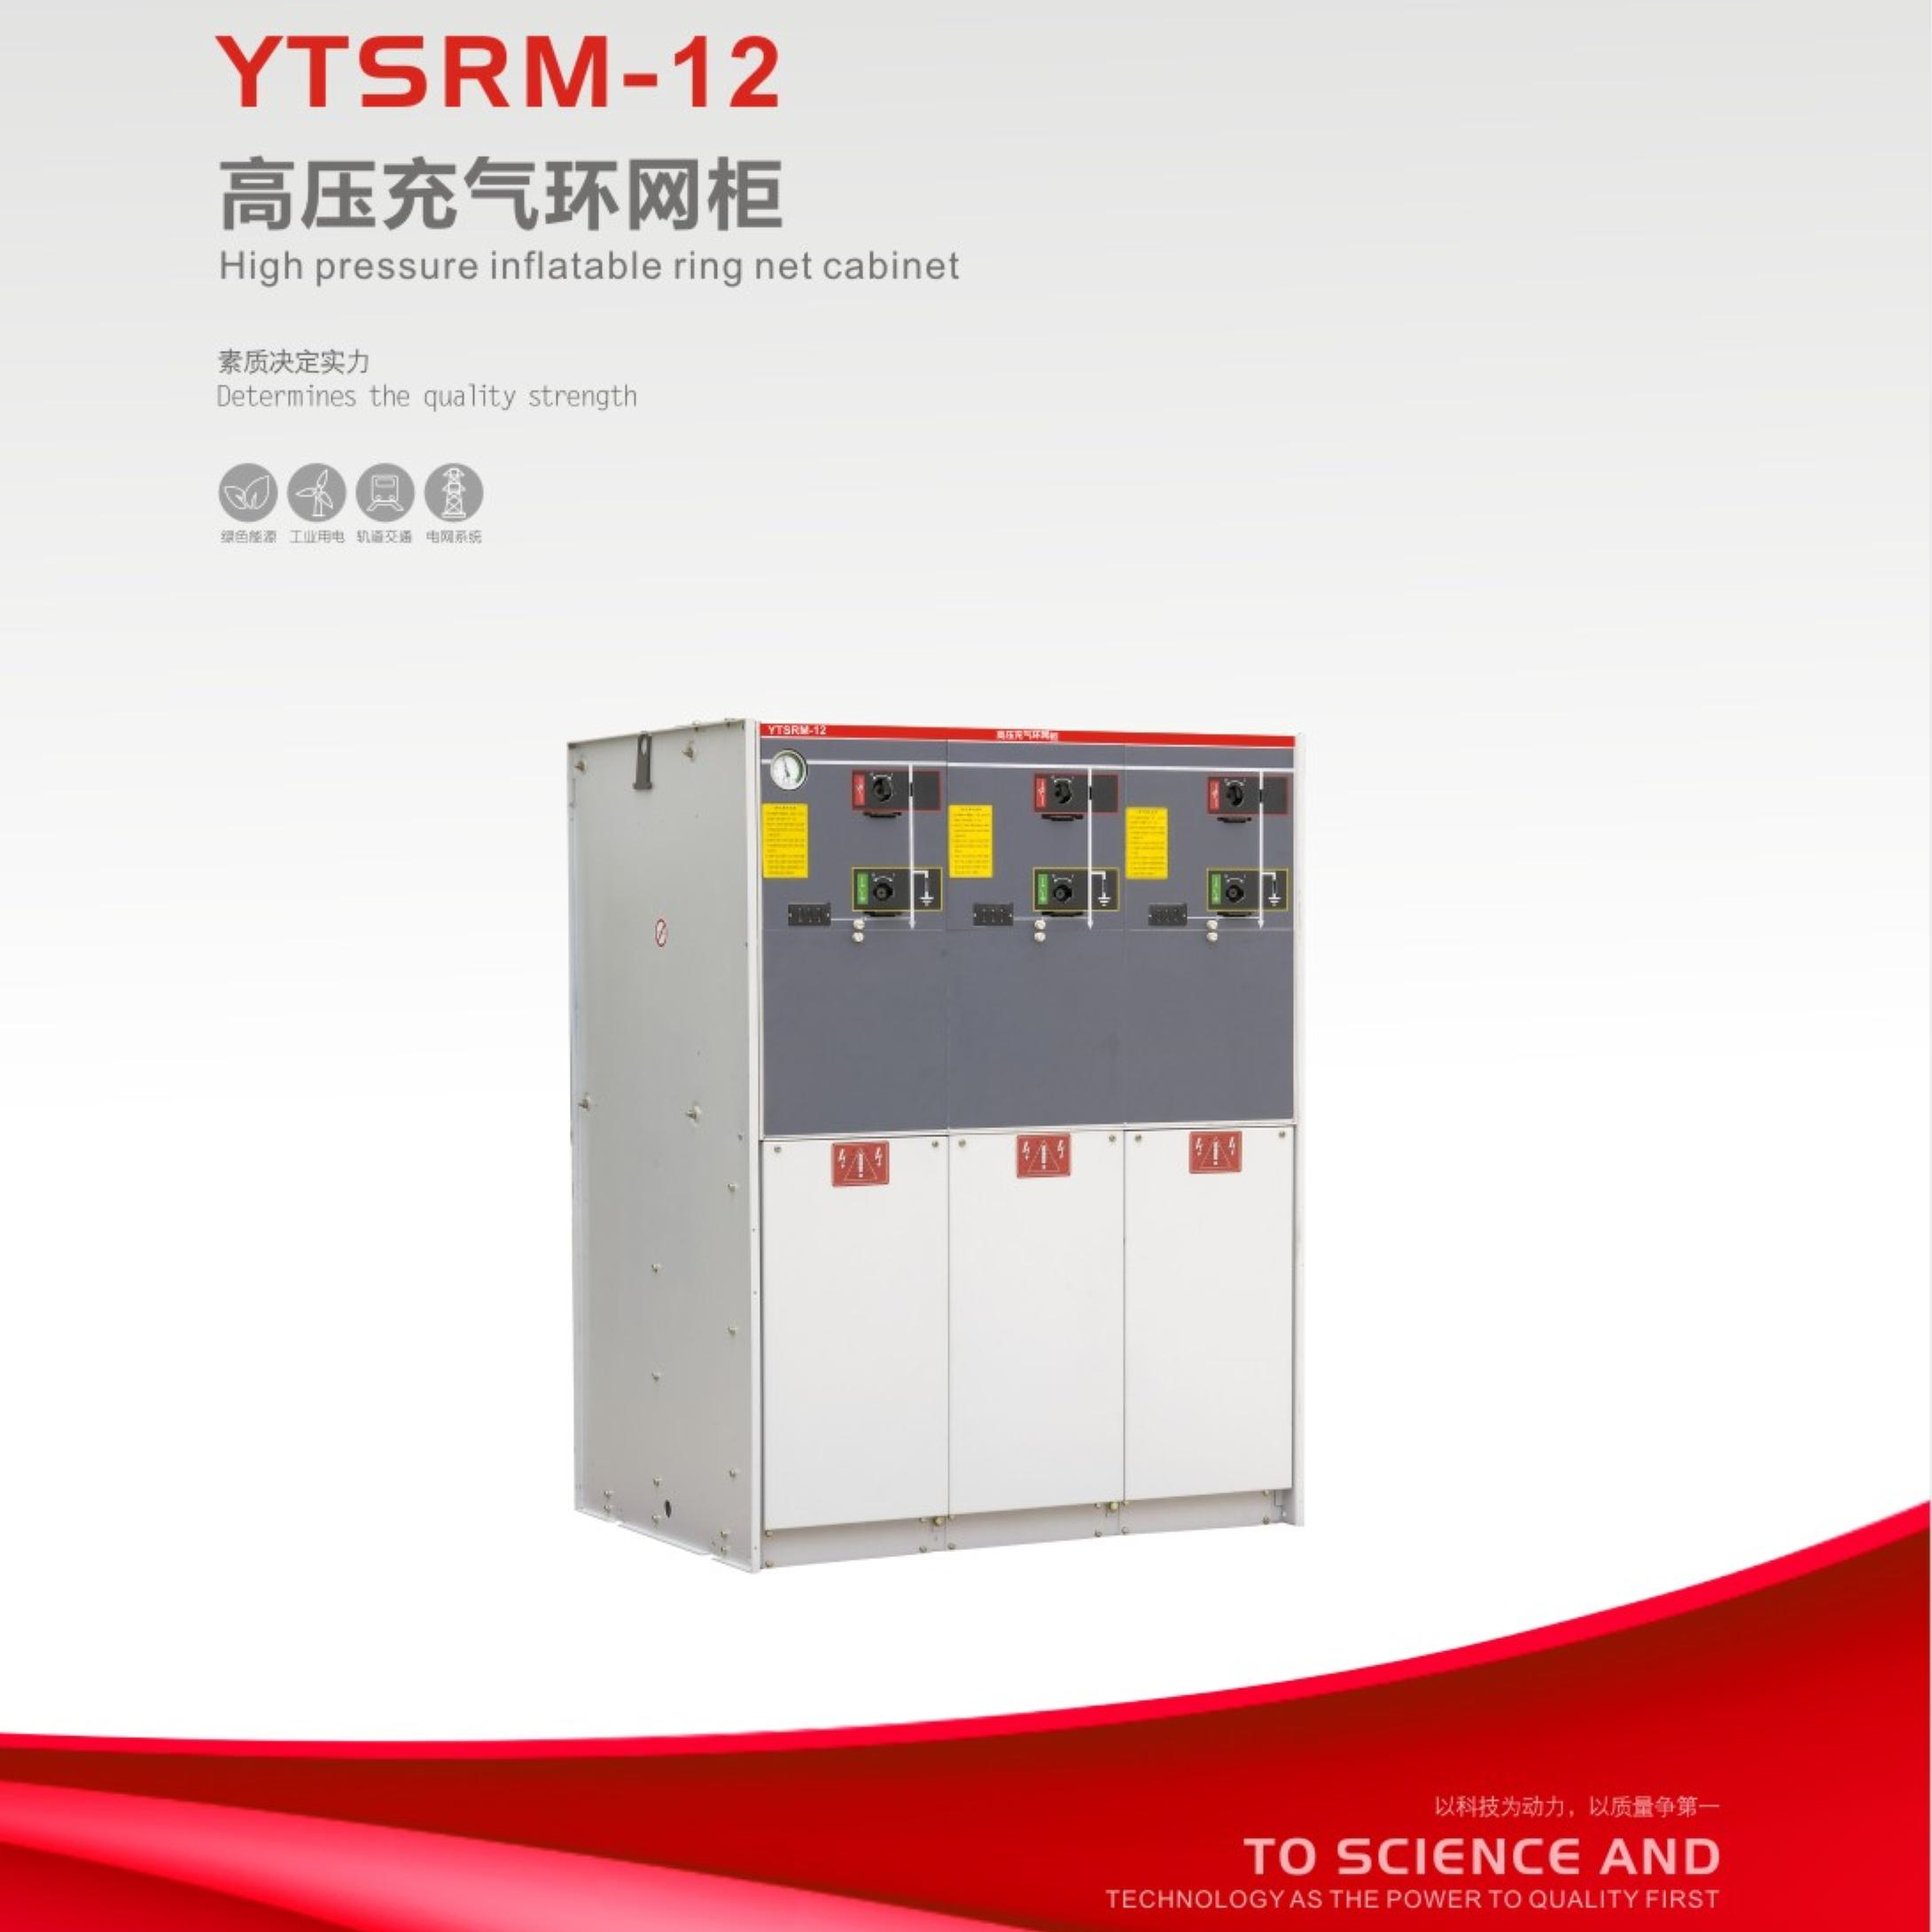 YTSRM-12高压充气环网柜